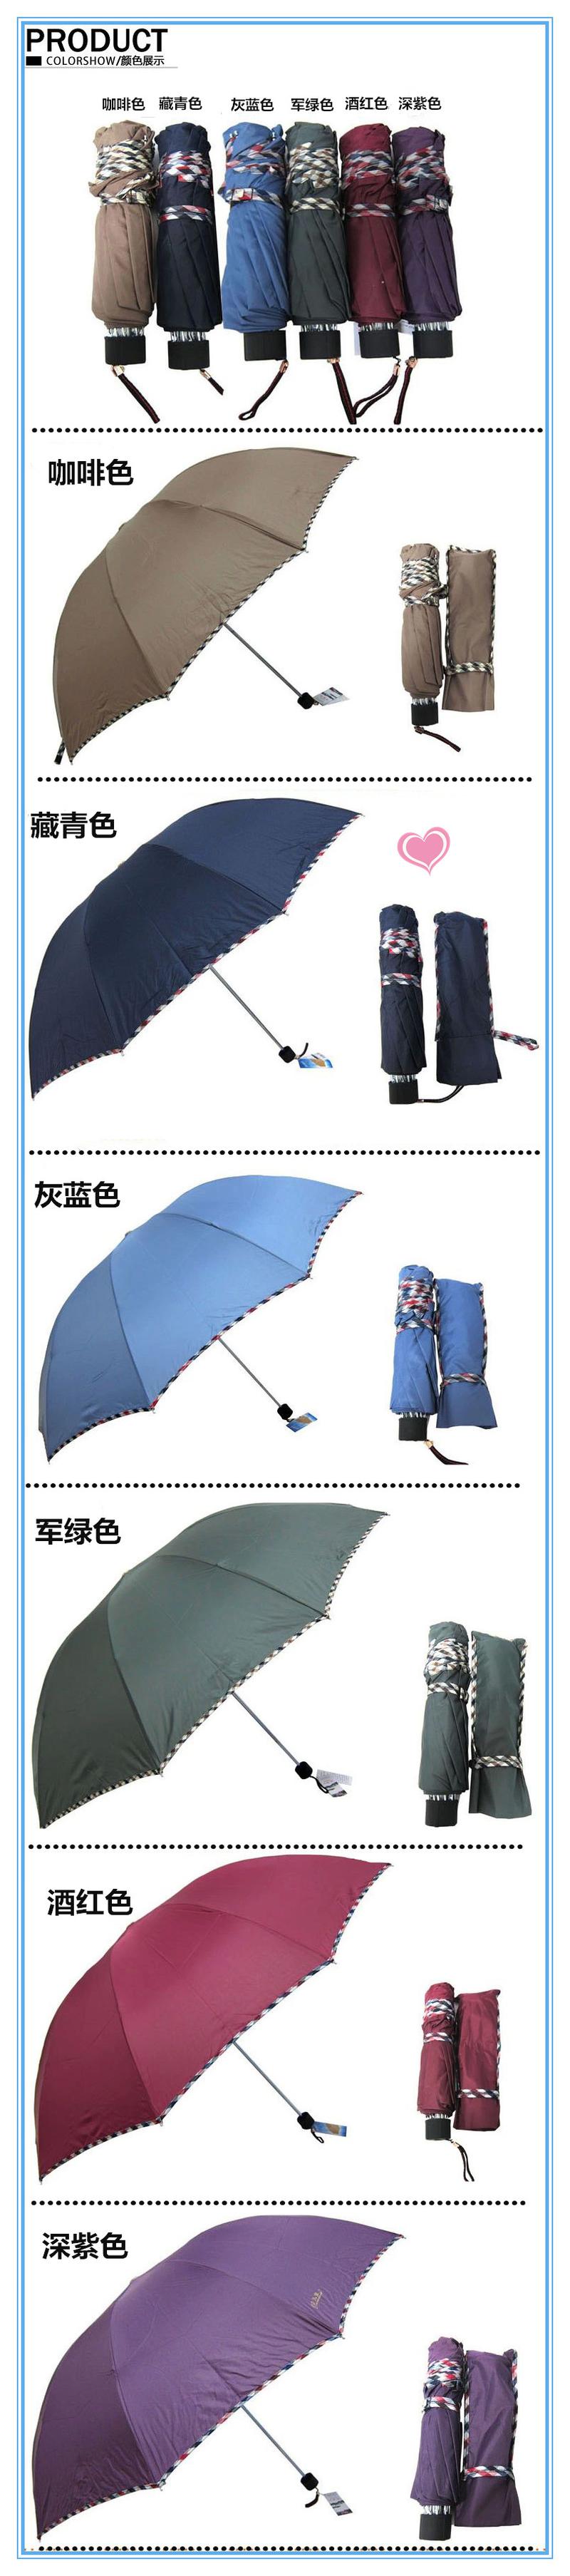 全国包邮天堂伞3311E碰超大晴雨伞强力拒水防晒三折伞商务男士伞 颜色随机